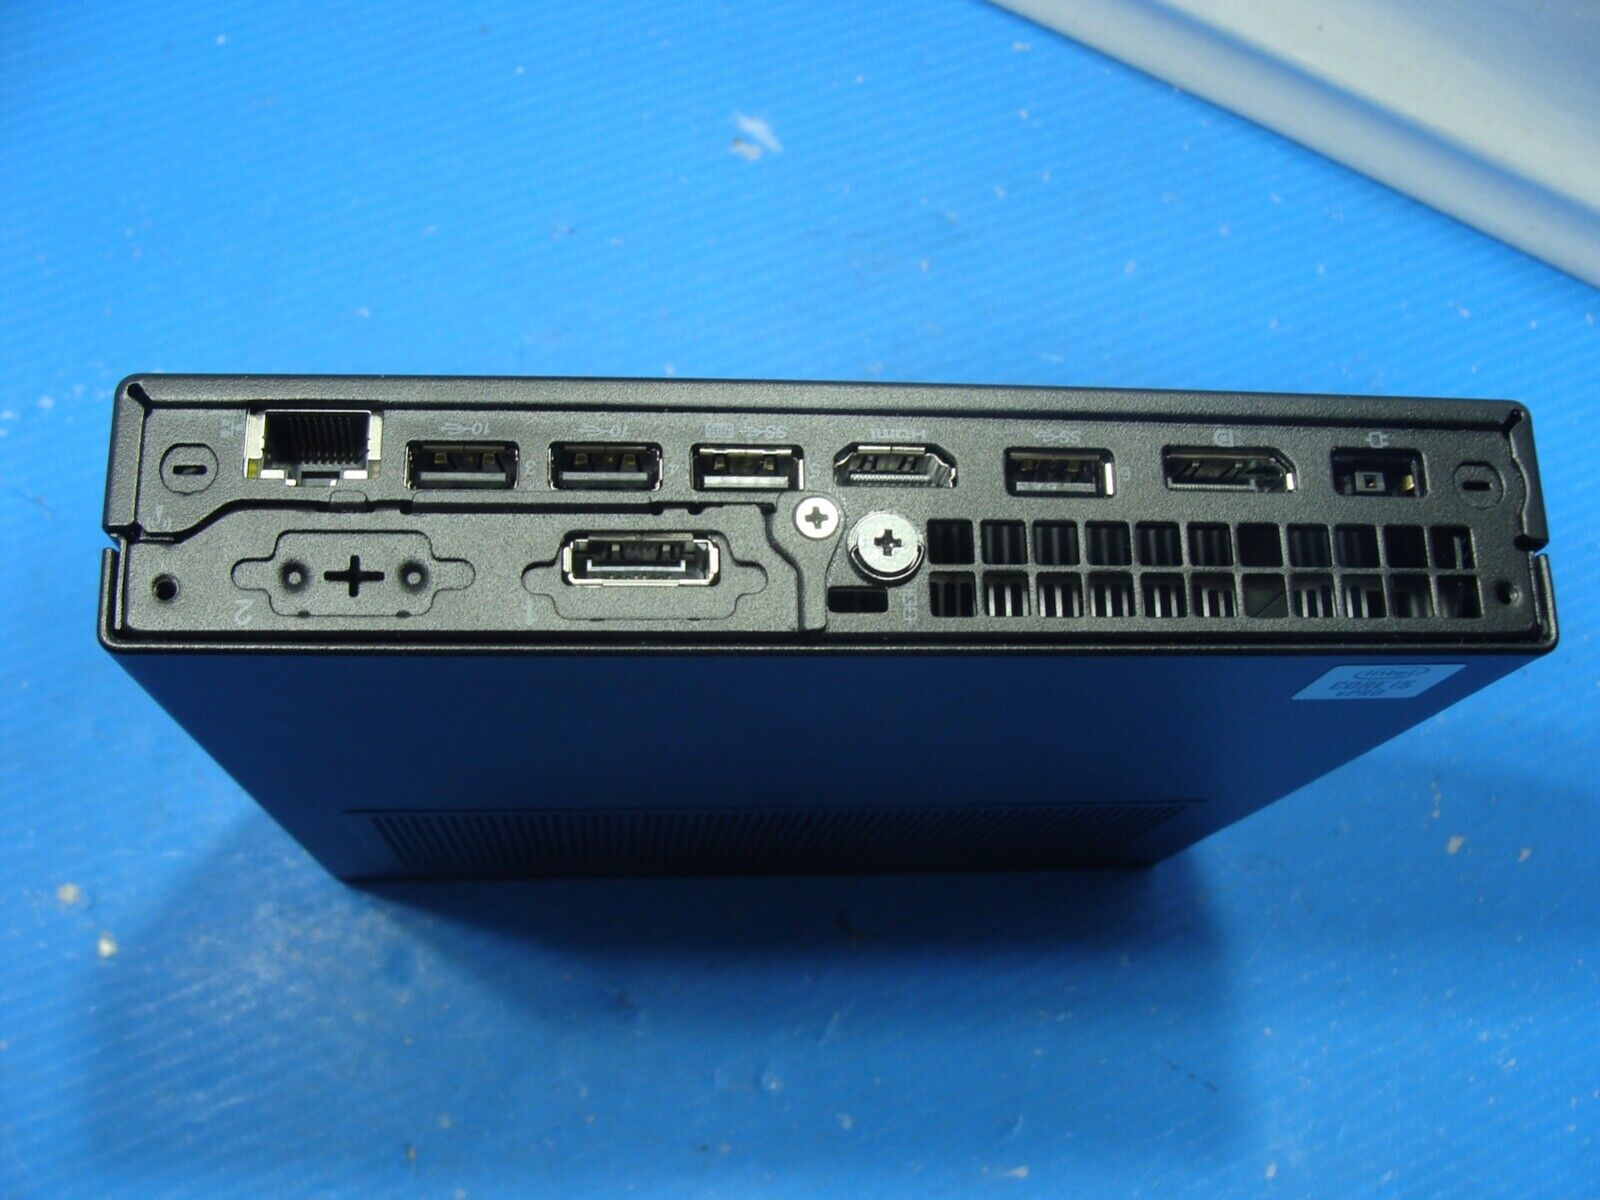 2Year Warranty Lenovo ThinkCentre M90Q Intel i5-10500 @2.30GHz 8GB Ram 256GB SSD